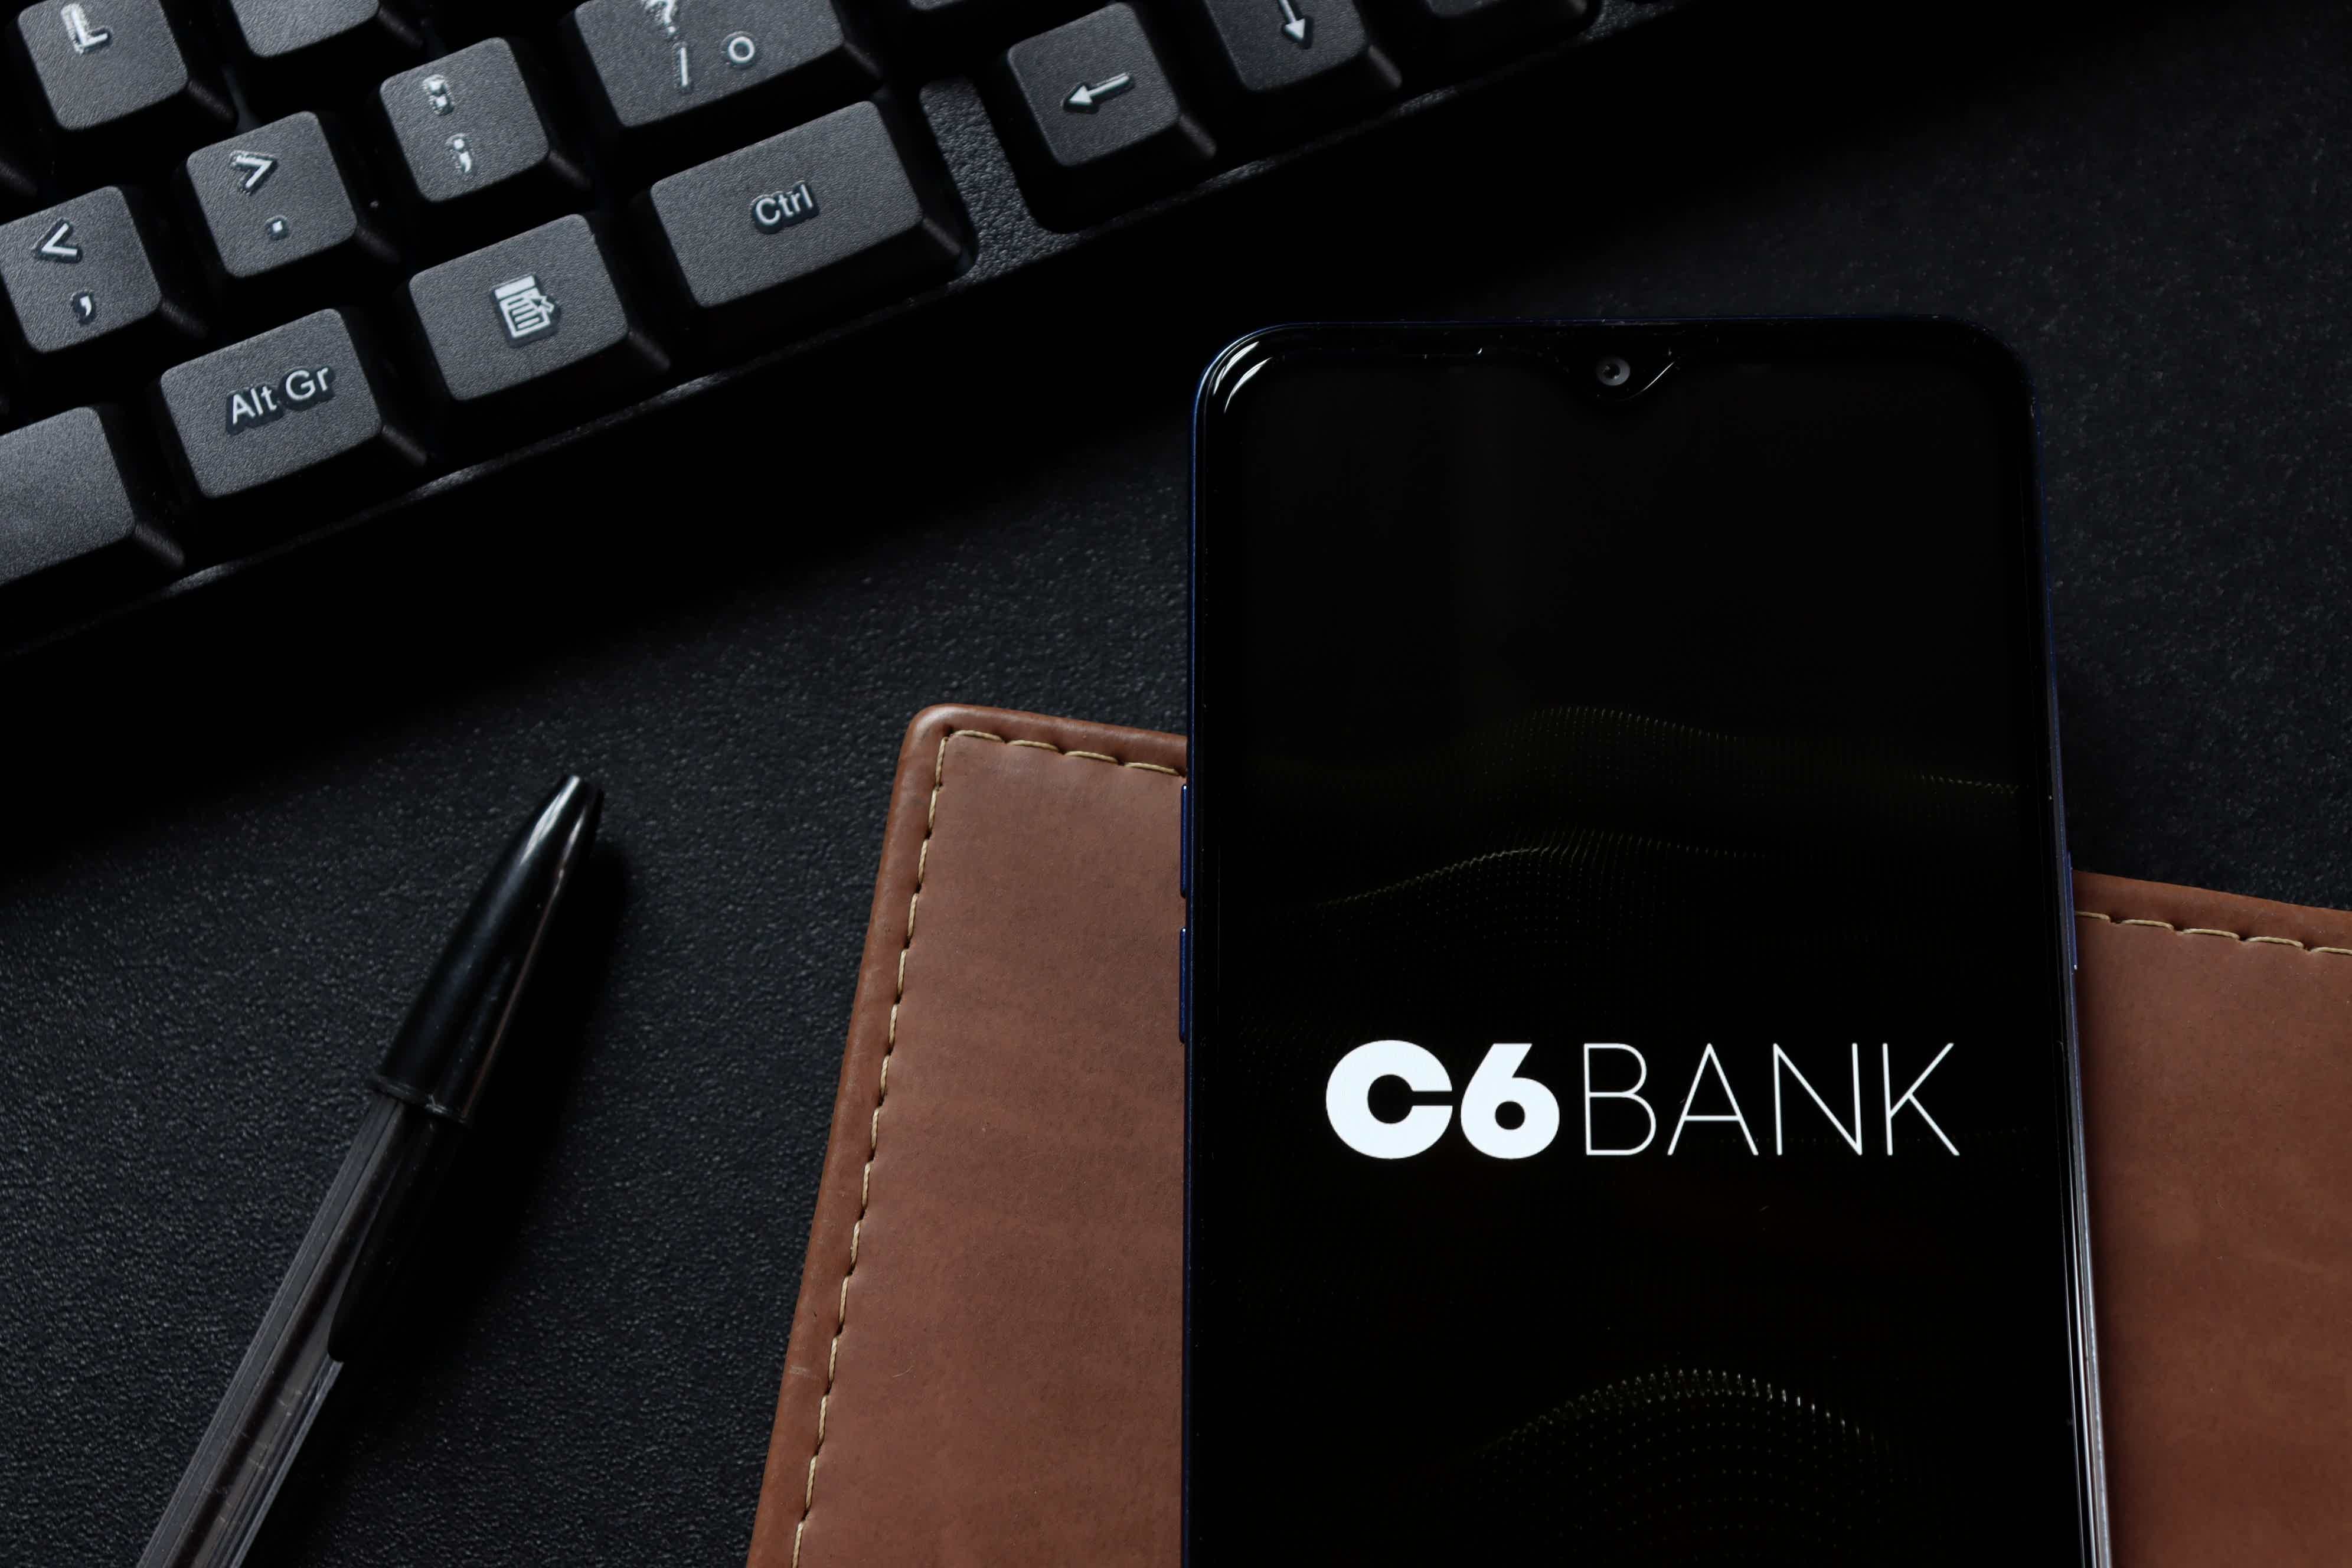 Imagem de celular com a logo do C6 Bank próximo a um teclado de computador e em cima de uma carteira marrom